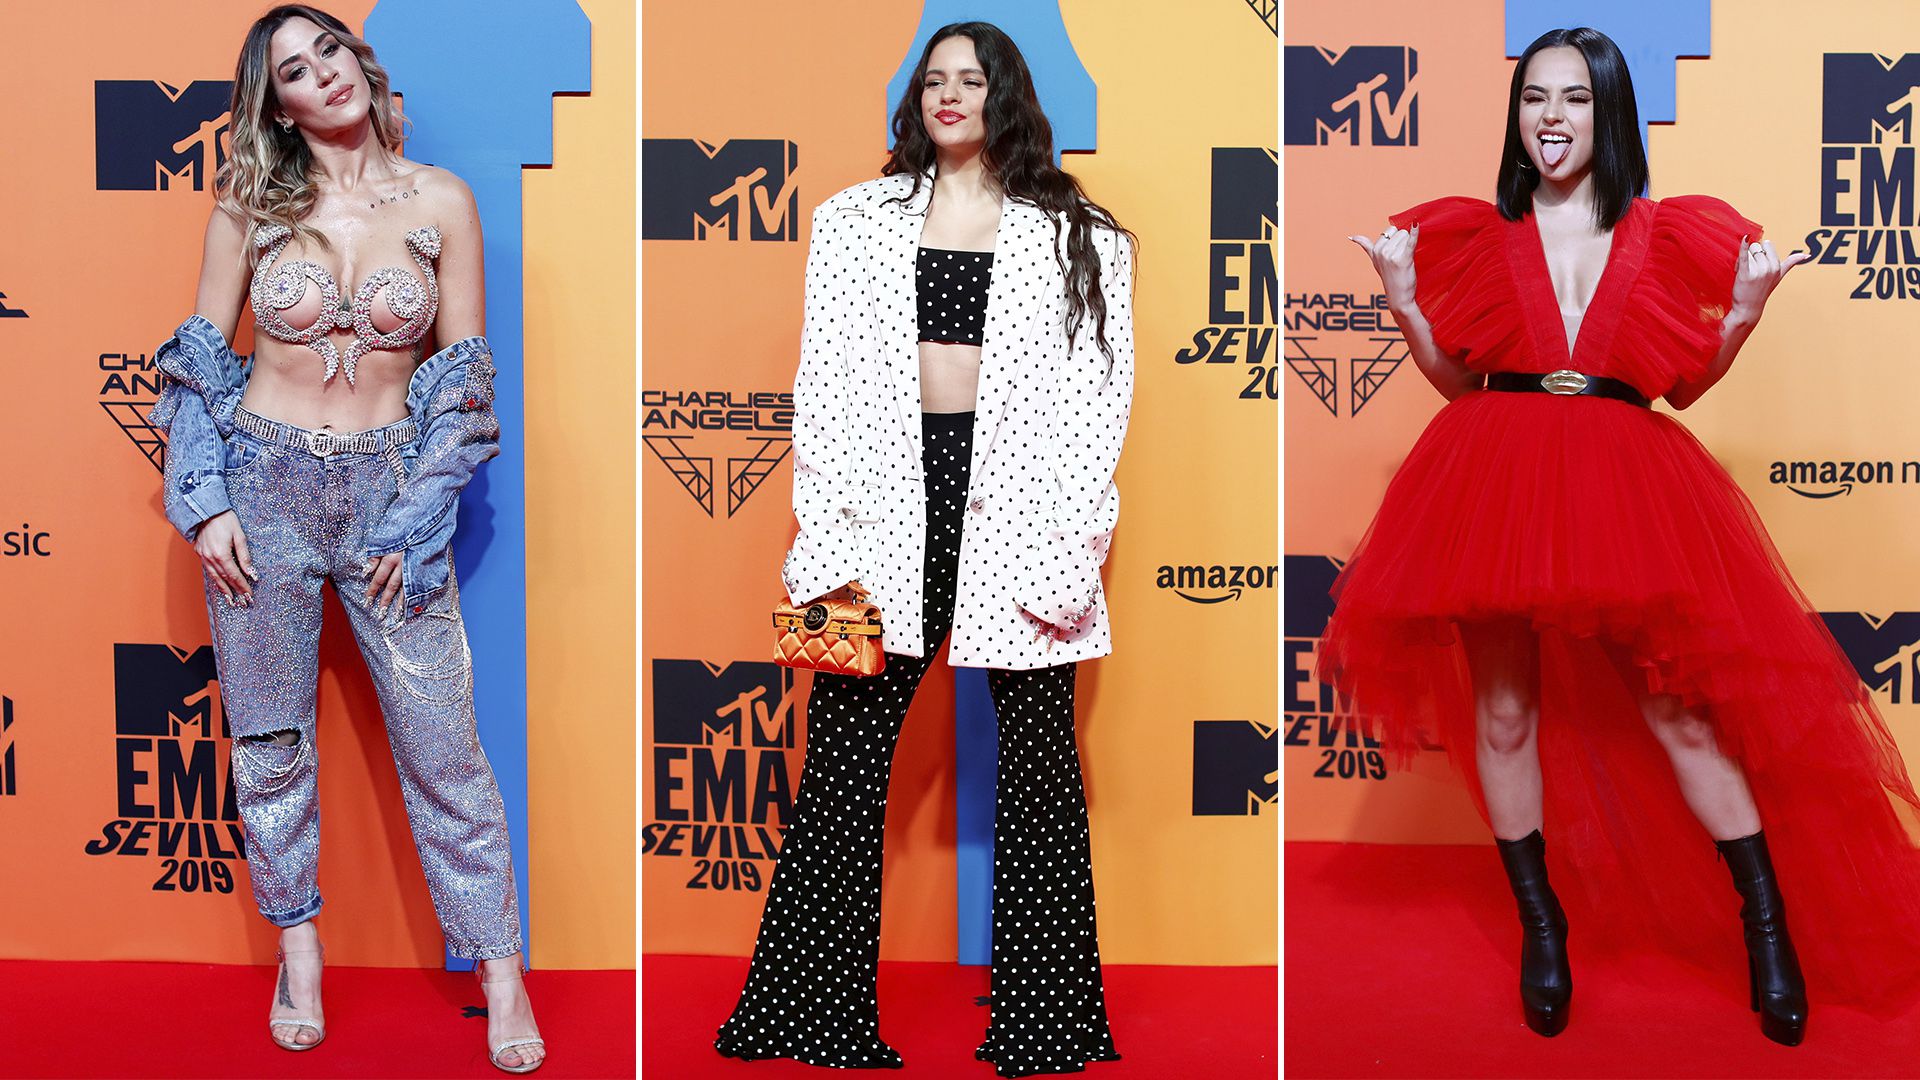 MTV EMA 2019: todos los looks